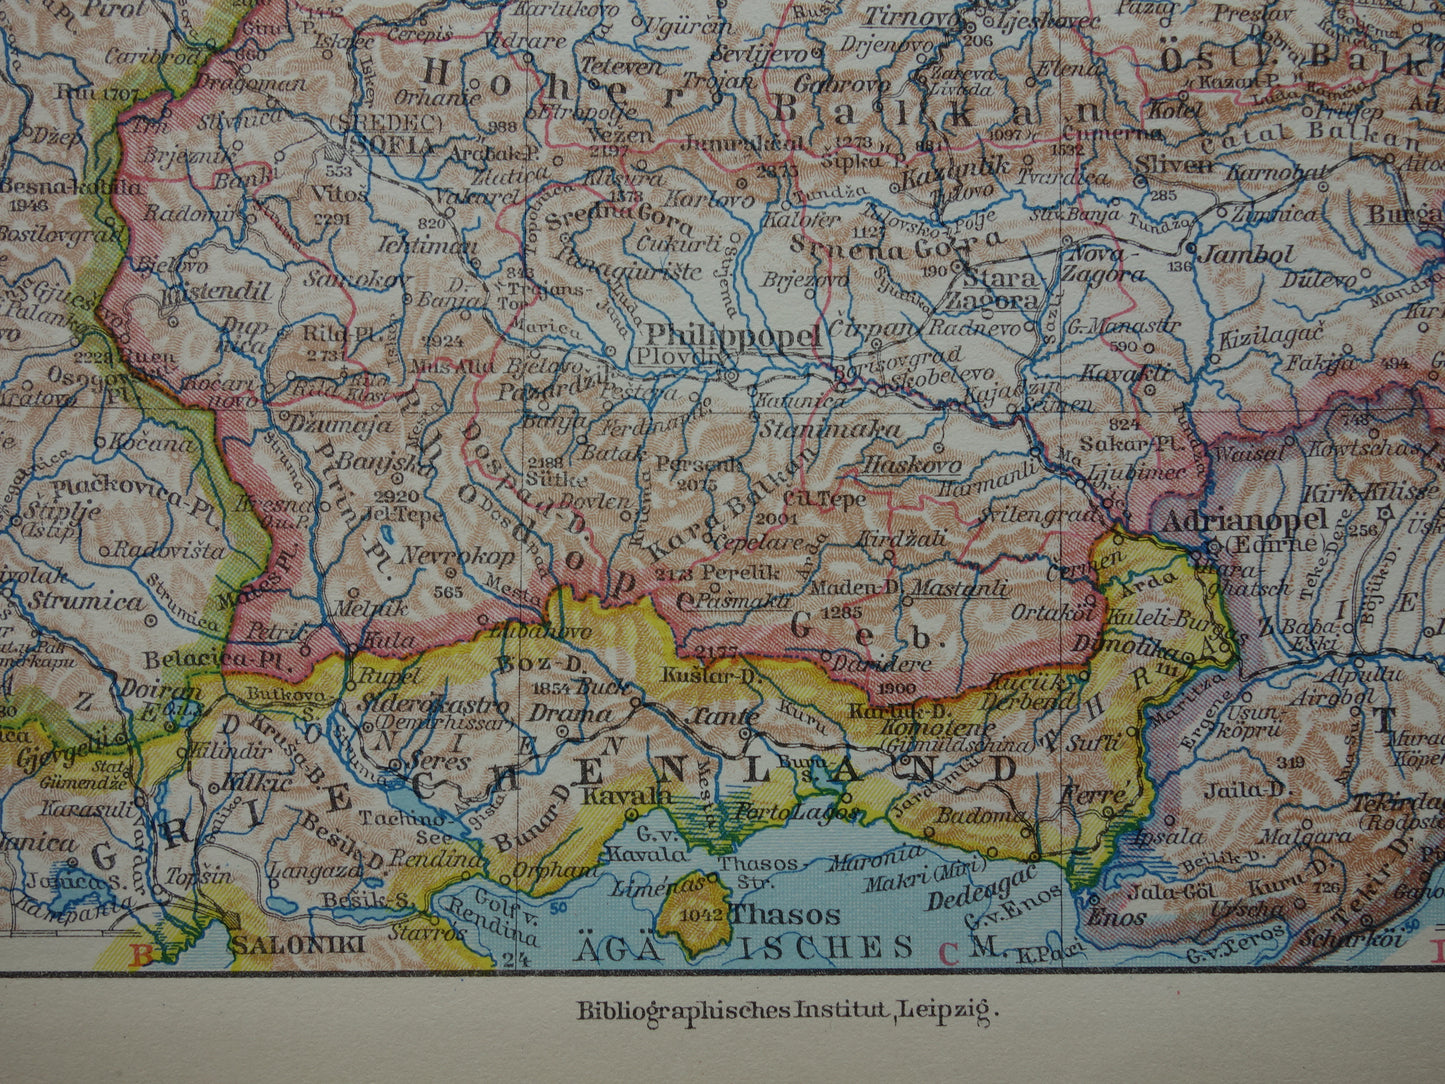 BULGARIJE oude landkaart van Bulgarije uit 1928 originele vintage kaart